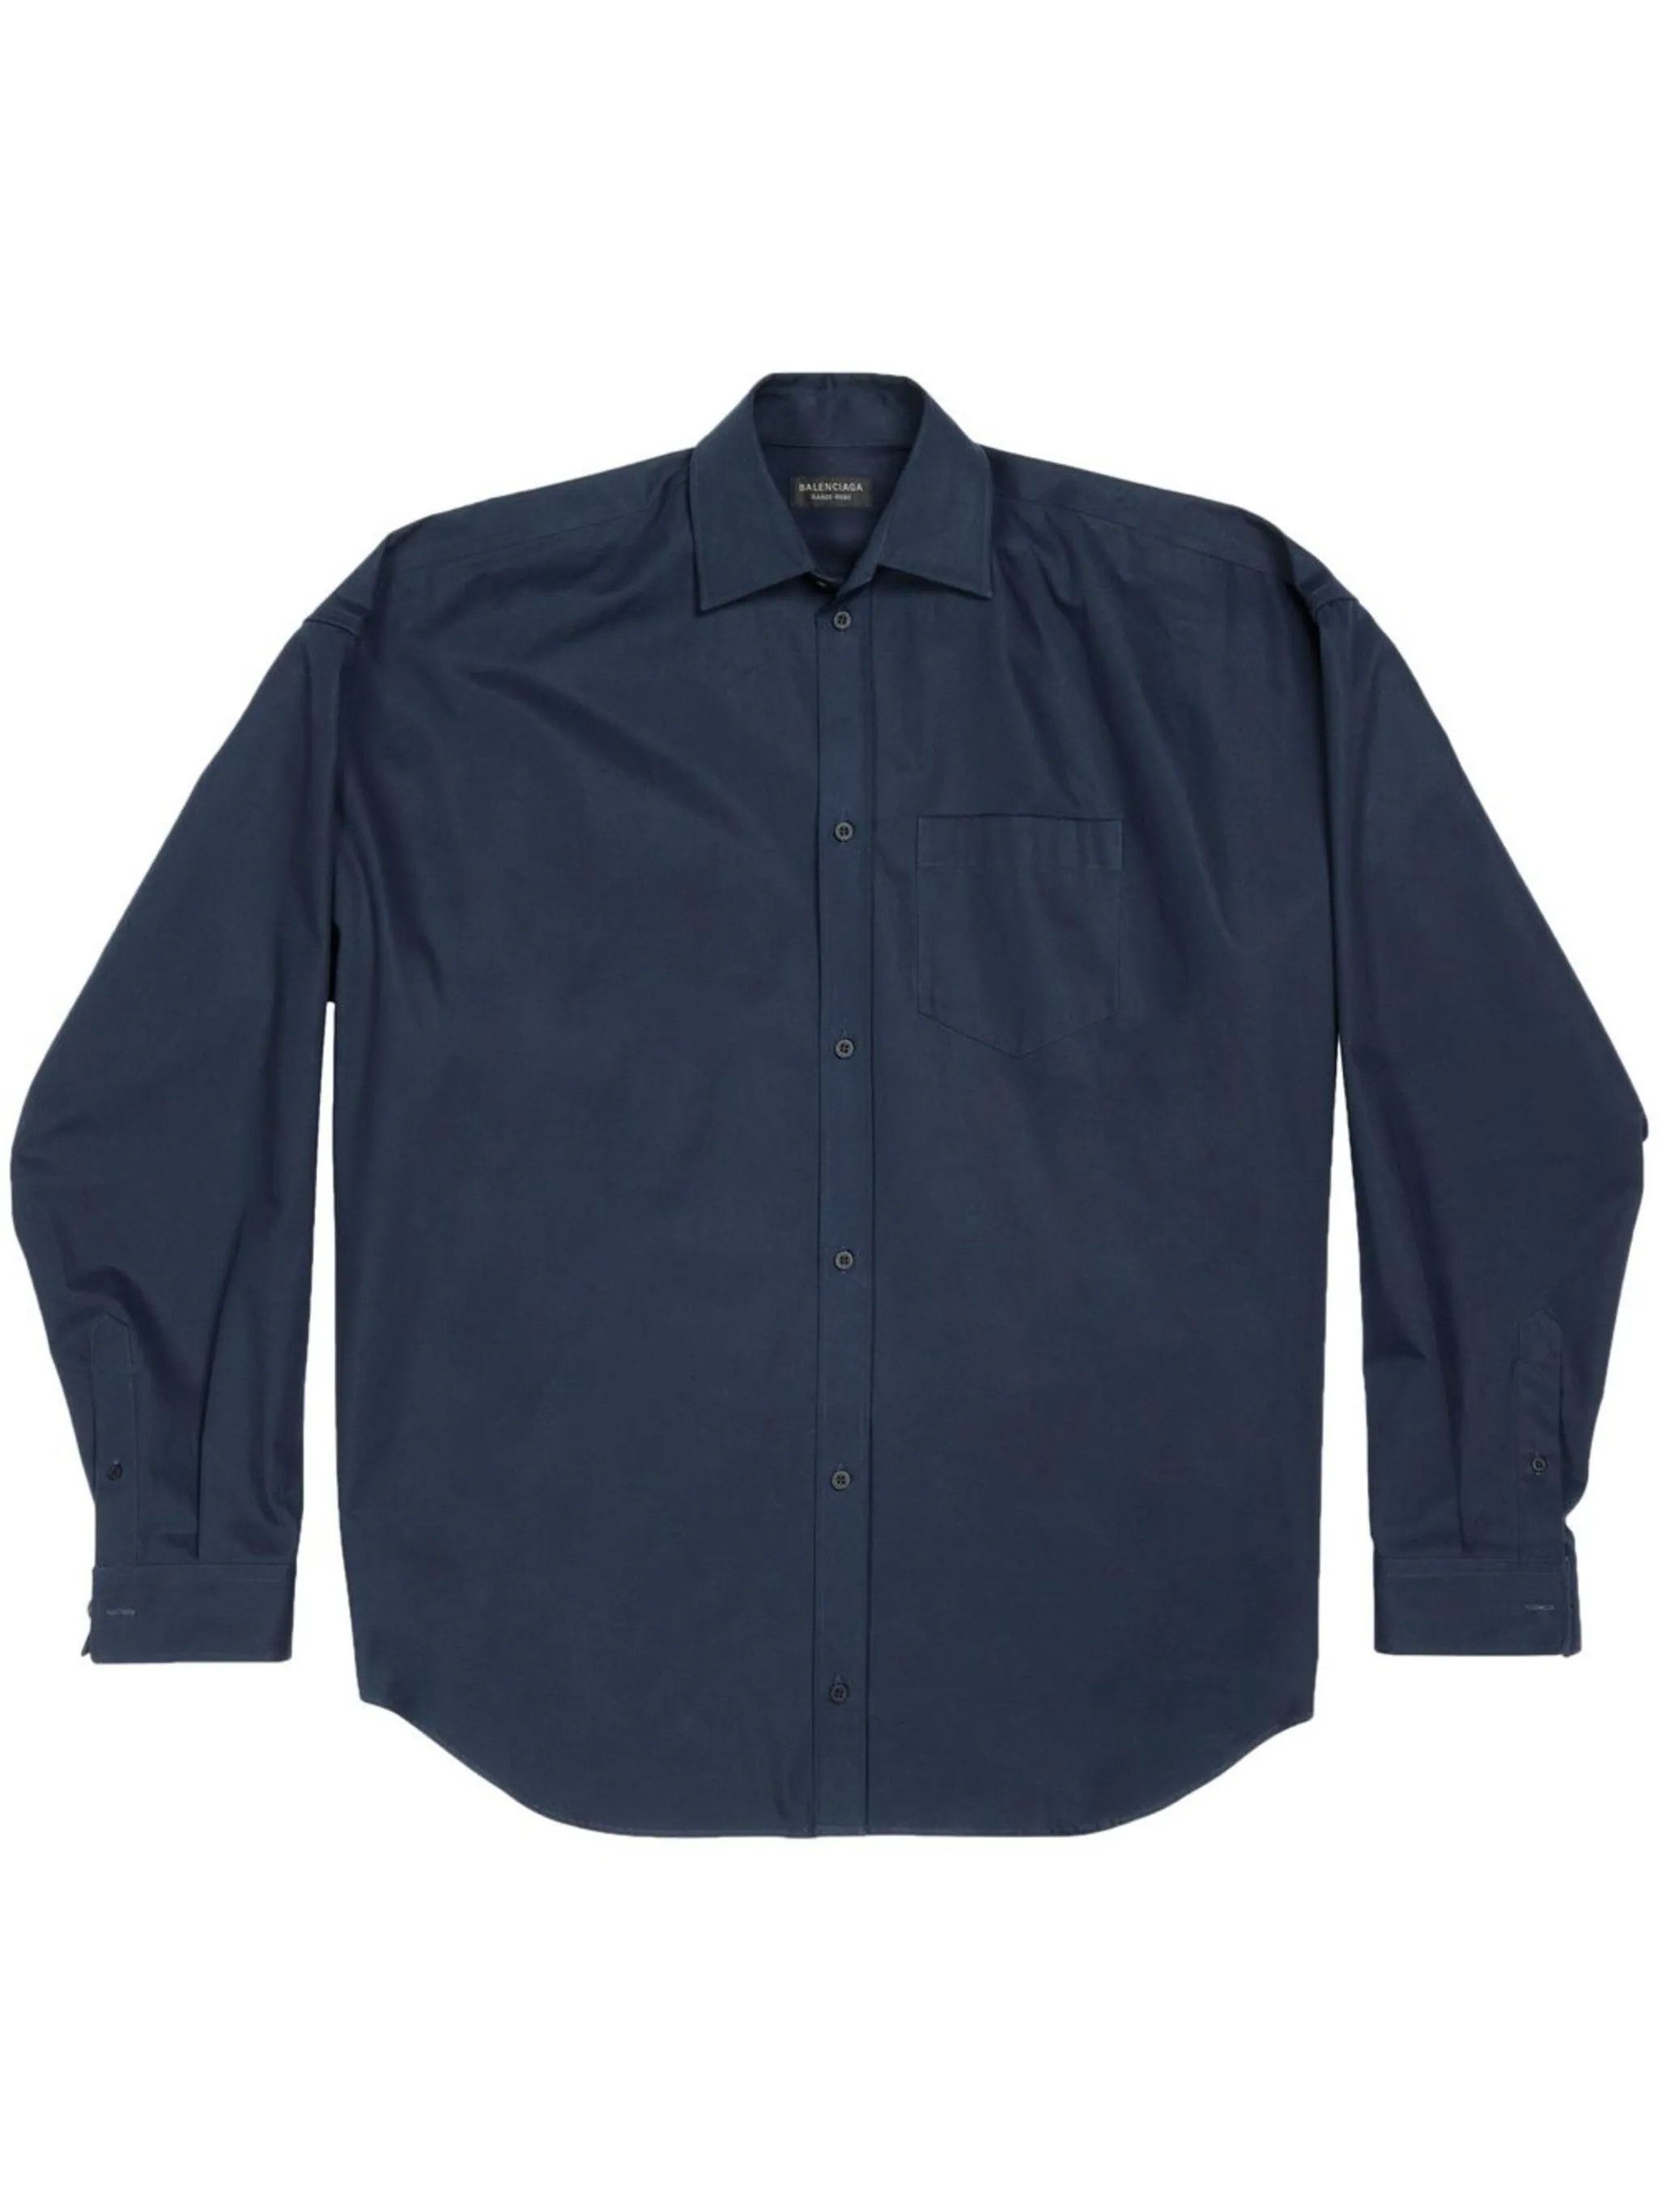 Balenciaga Garde-Robe Cocoon long-sleeve Shirt size 39 | Grailed